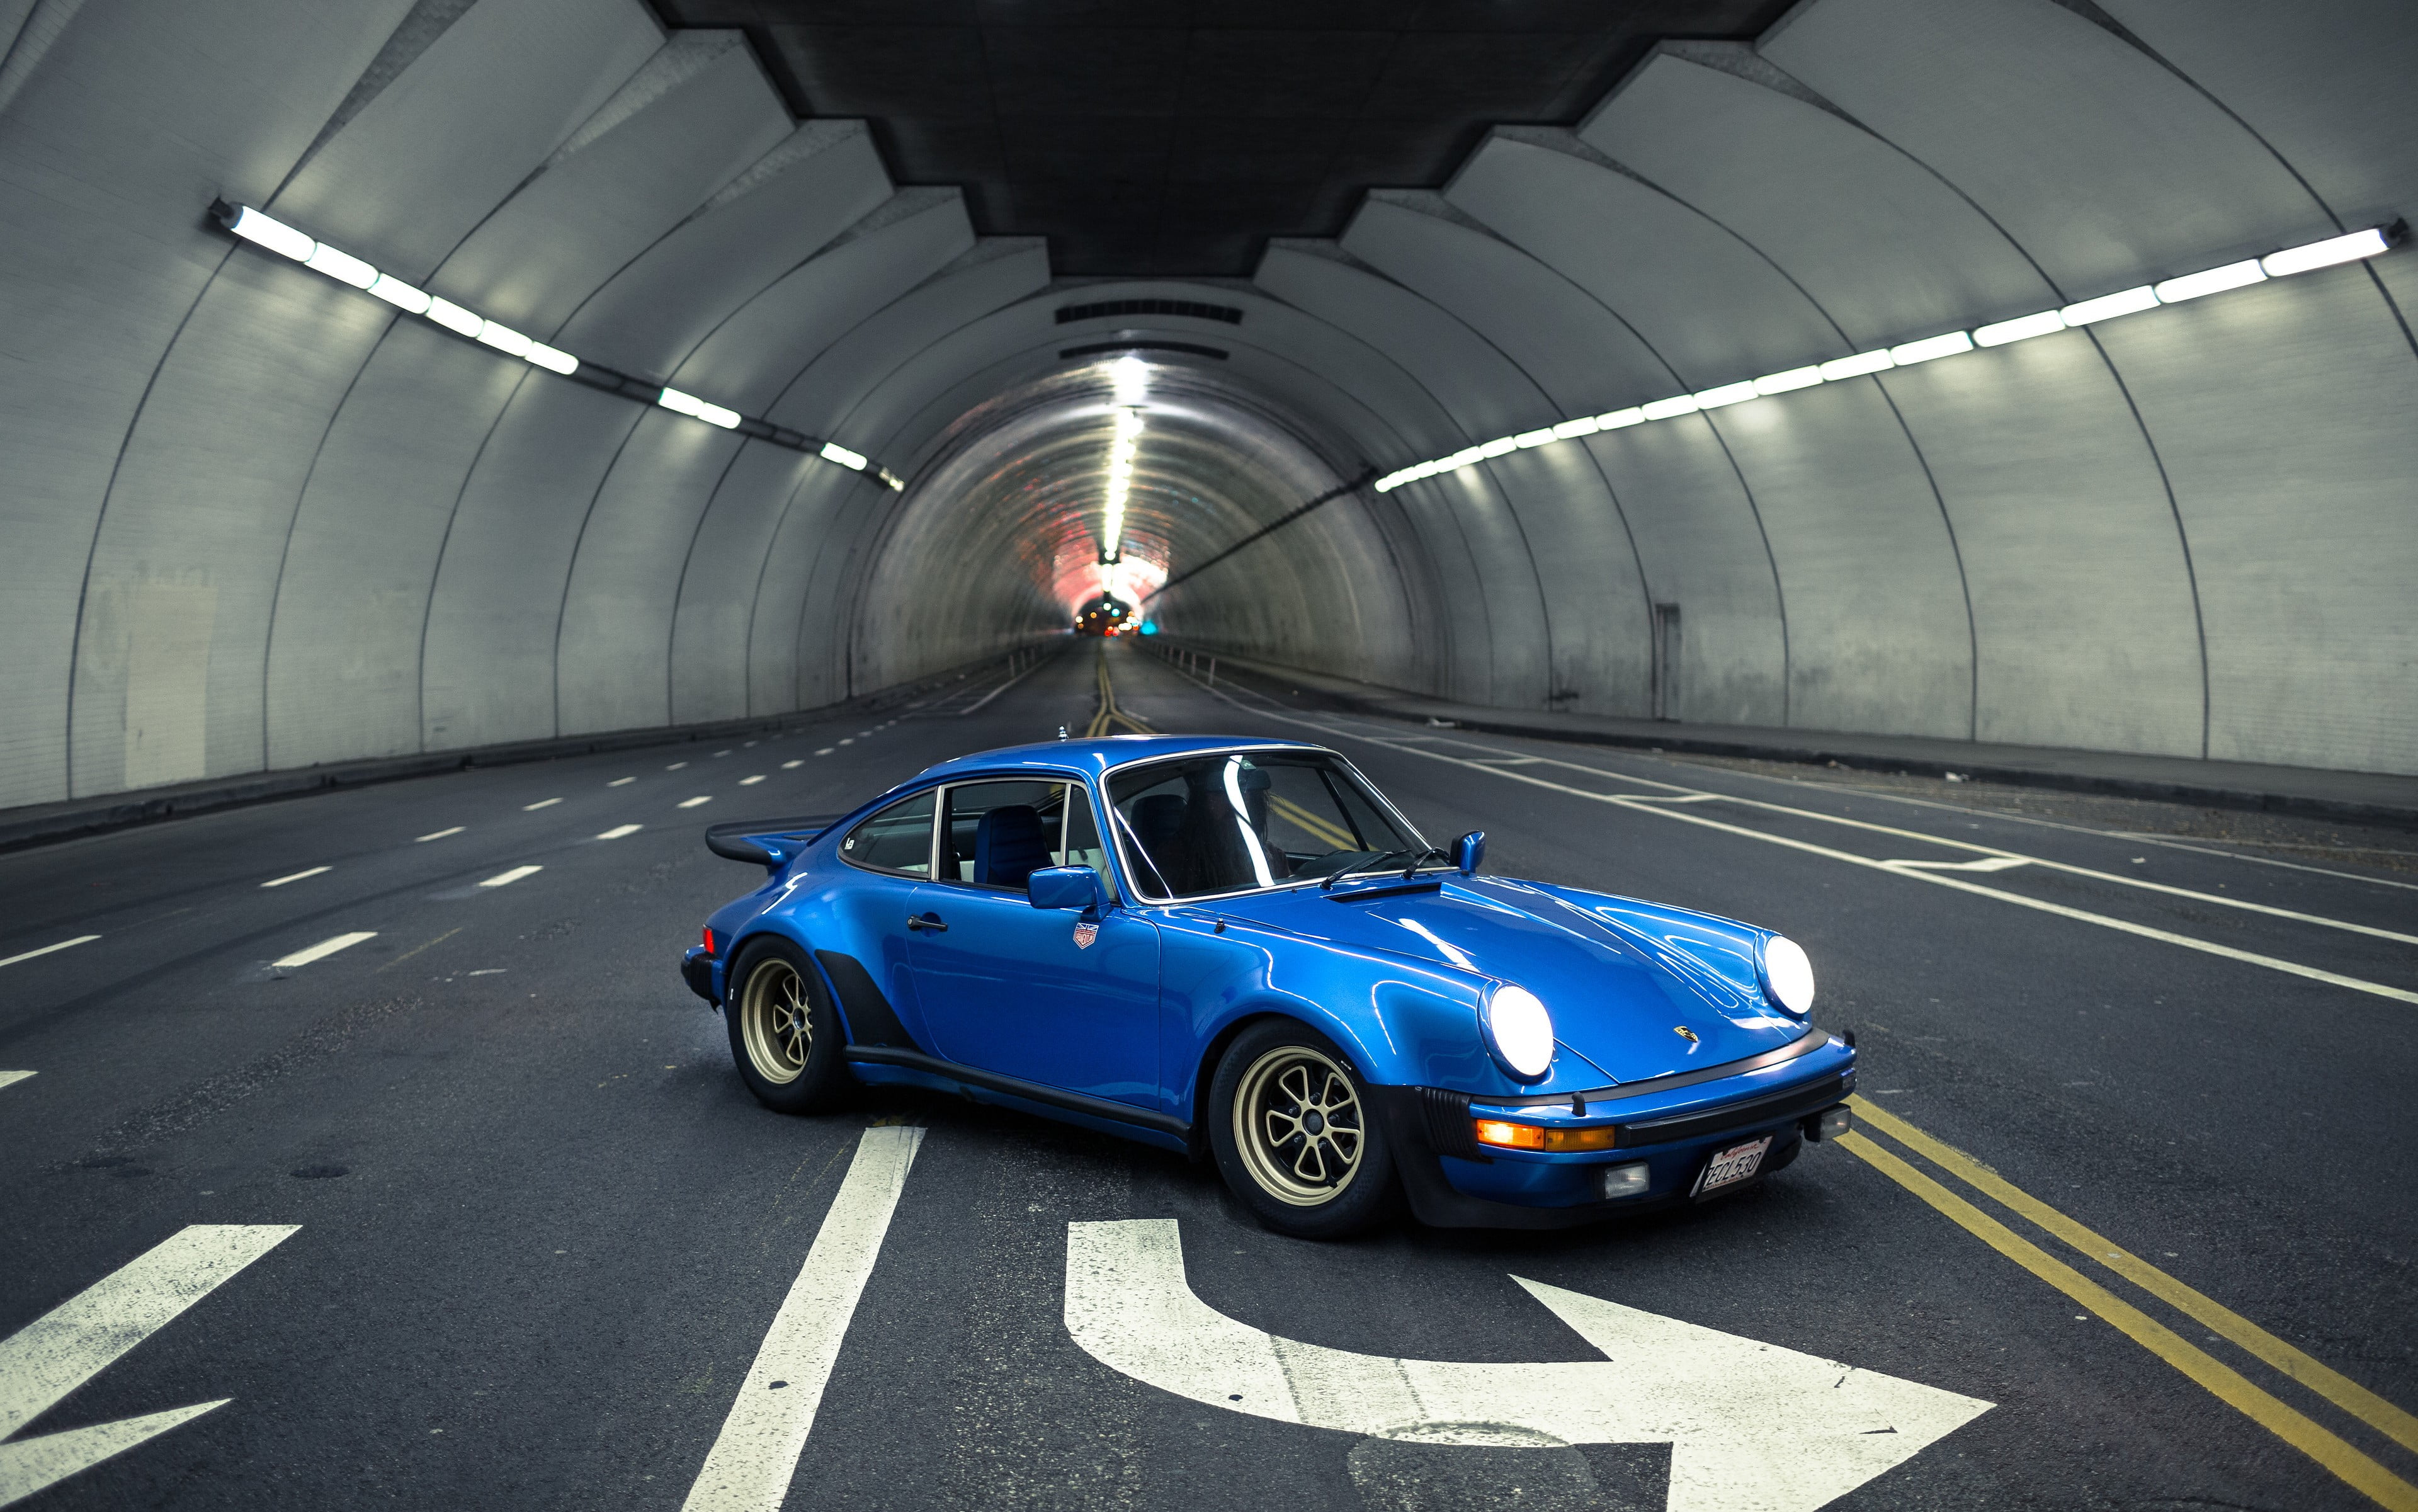 Porsche 930, Porsche 911, blue cars, night, city lights, tunnel